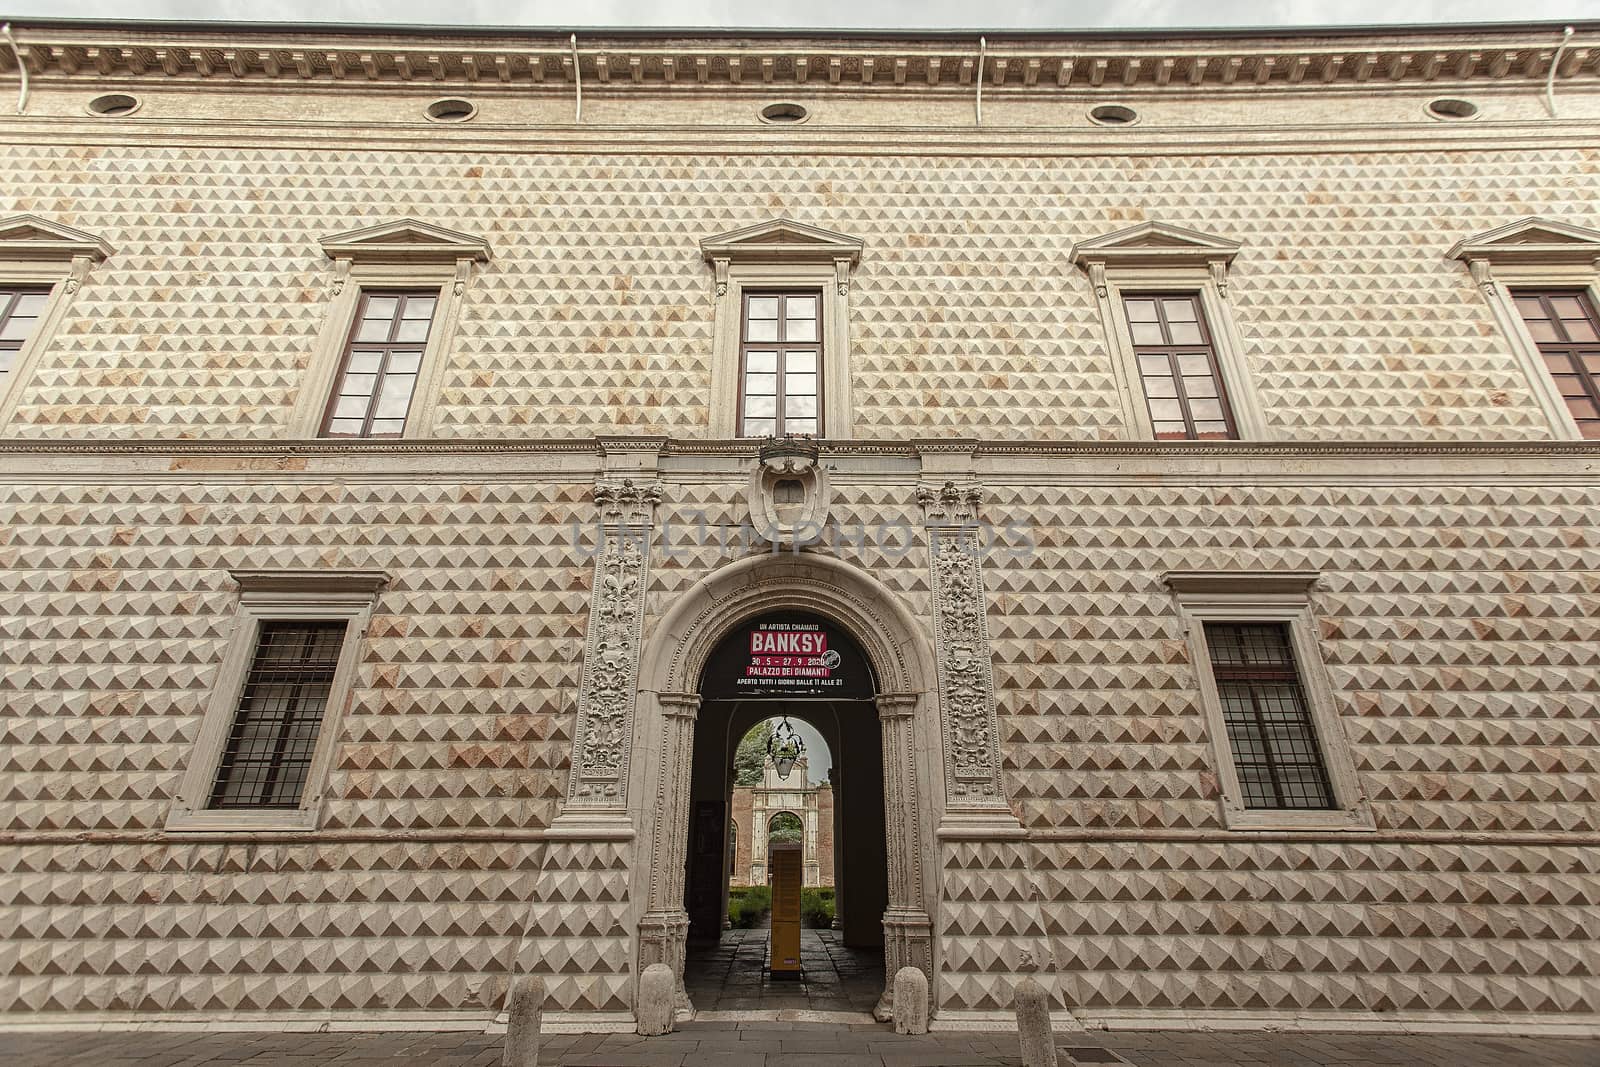 Palazzo dei Diamanti in Ferrara in Italy 2 by pippocarlot